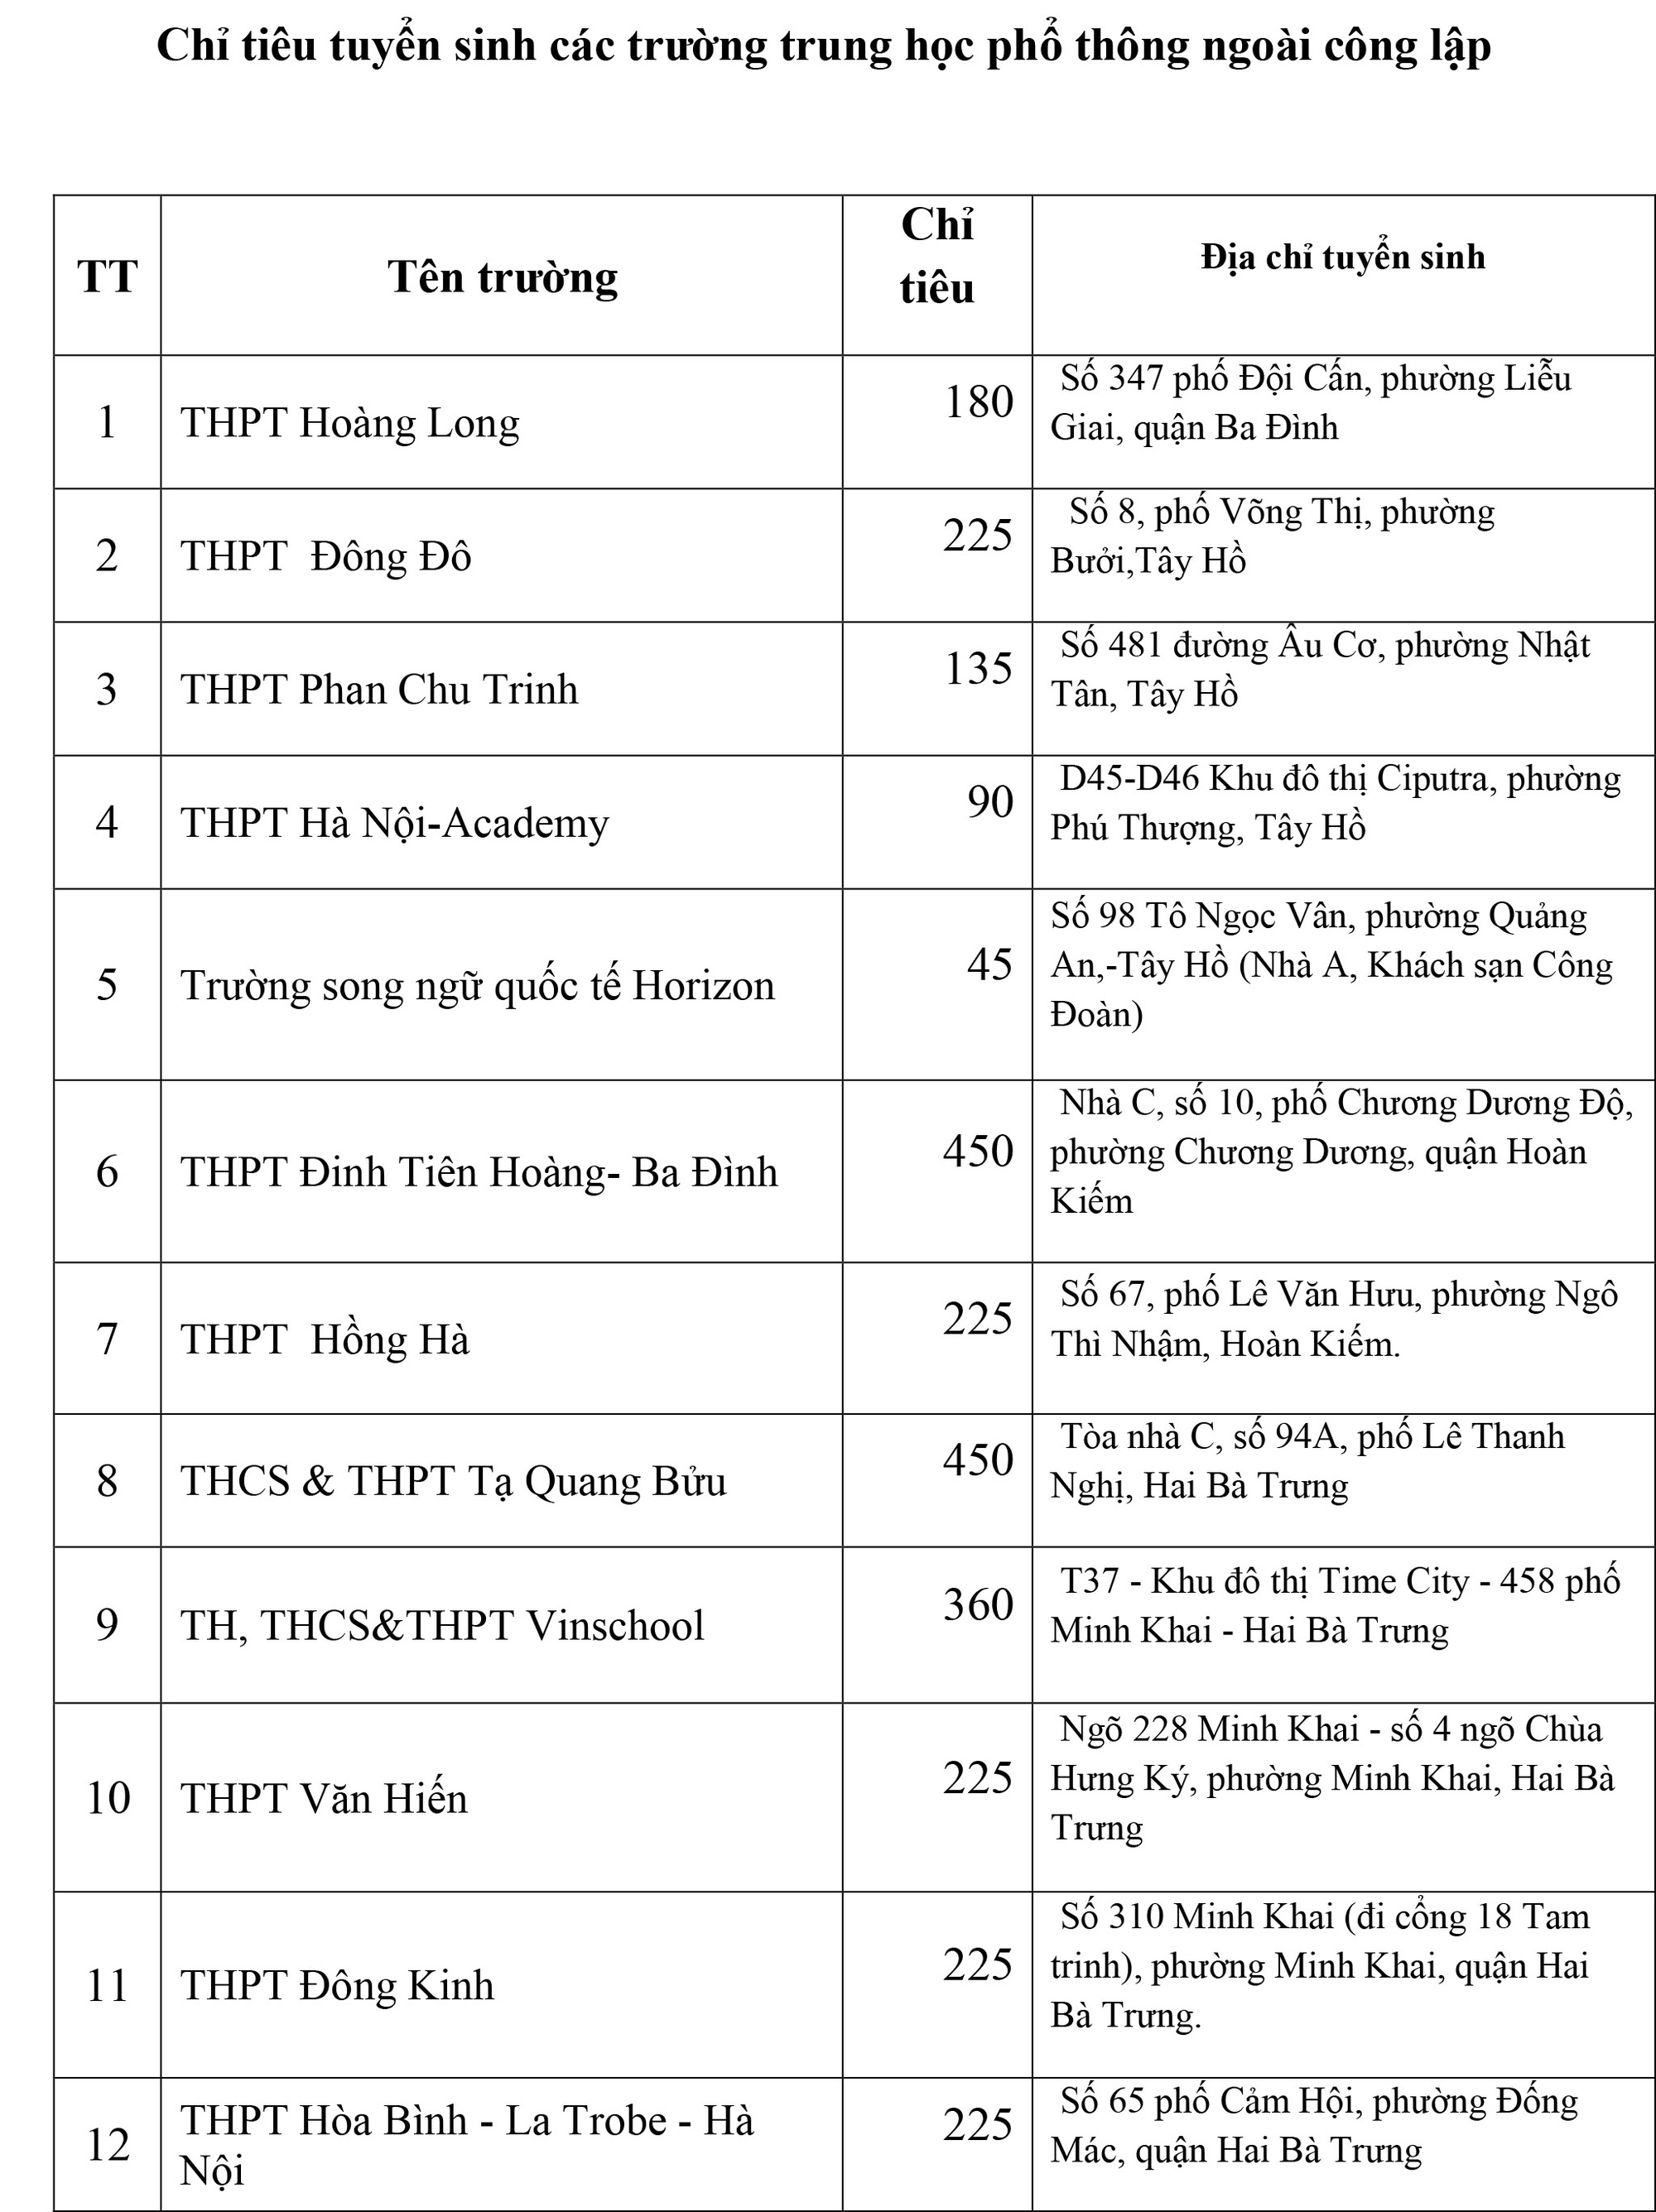 Thông tin mới nhất về chỉ tiêu tuyển sinh của các trường THPT chuyên tại Hà Nội, phụ huynh cân nhắc nộp hồ sơ cho con - Ảnh 10.